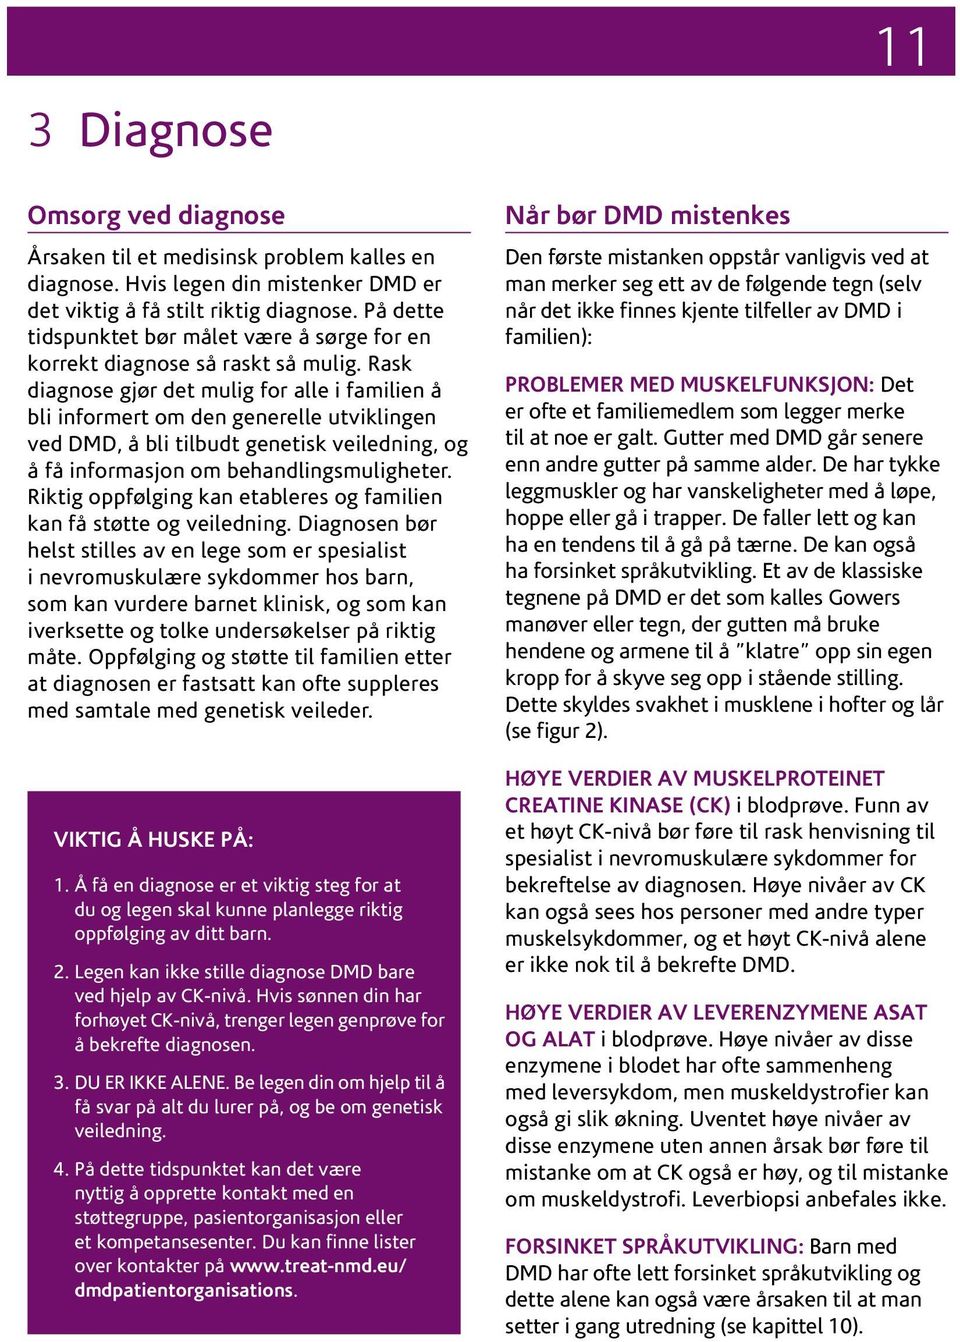 Rask diagnose gjør det mulig for alle i familien å bli informert om den generelle utviklingen ved DMD, å bli tilbudt genetisk veiledning, og å få informasjon om behandlingsmuligheter.